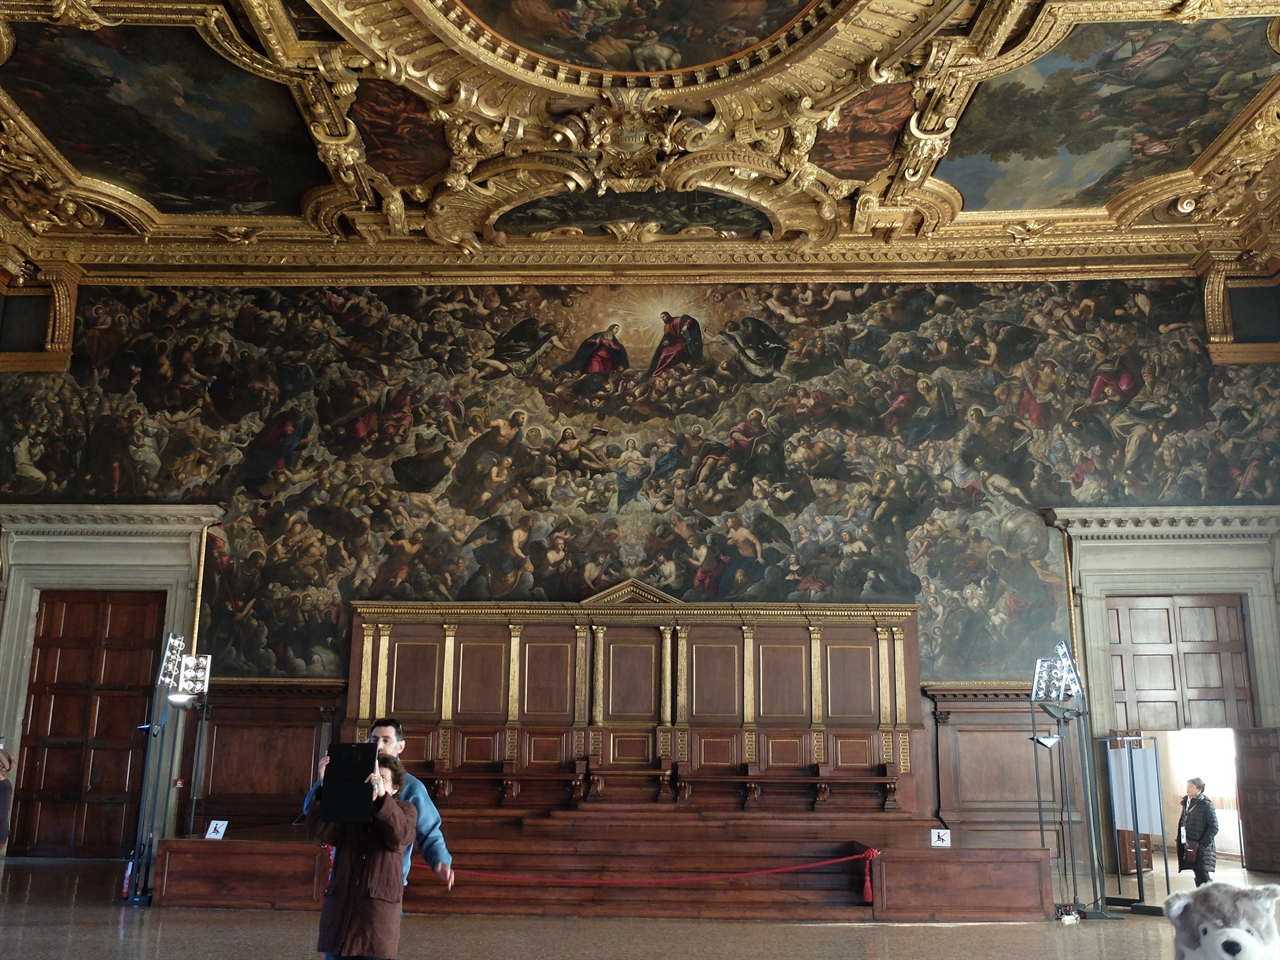 천국 틴토레토, ‘천국’, 베네치아 두칼레 궁전. 가로 폭 22미터의 세계 최대의 유화 작품입니다. 